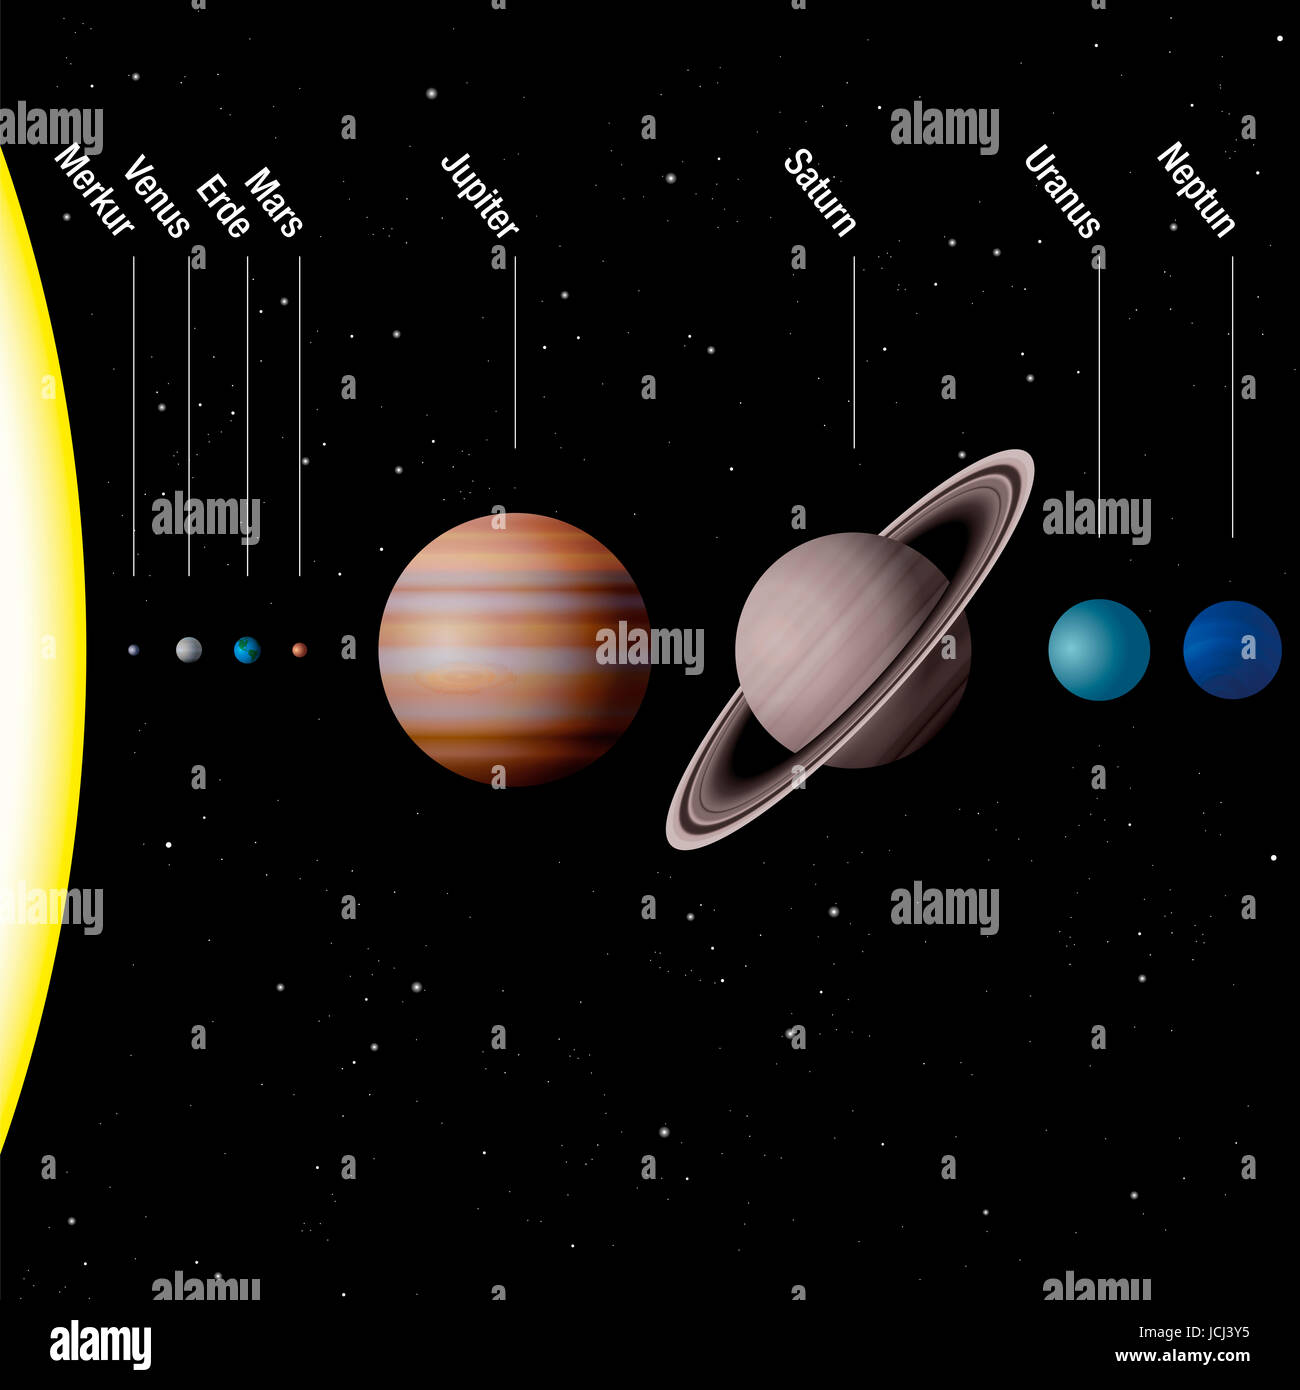 Planeten unseres Sonnensystems - getreu Waage - Sonne und acht Planeten Merkur, Venus, Erde, Mars, Jupiter, Saturn, Uranus, Neptun - deutsche Beschriftung! Stockfoto